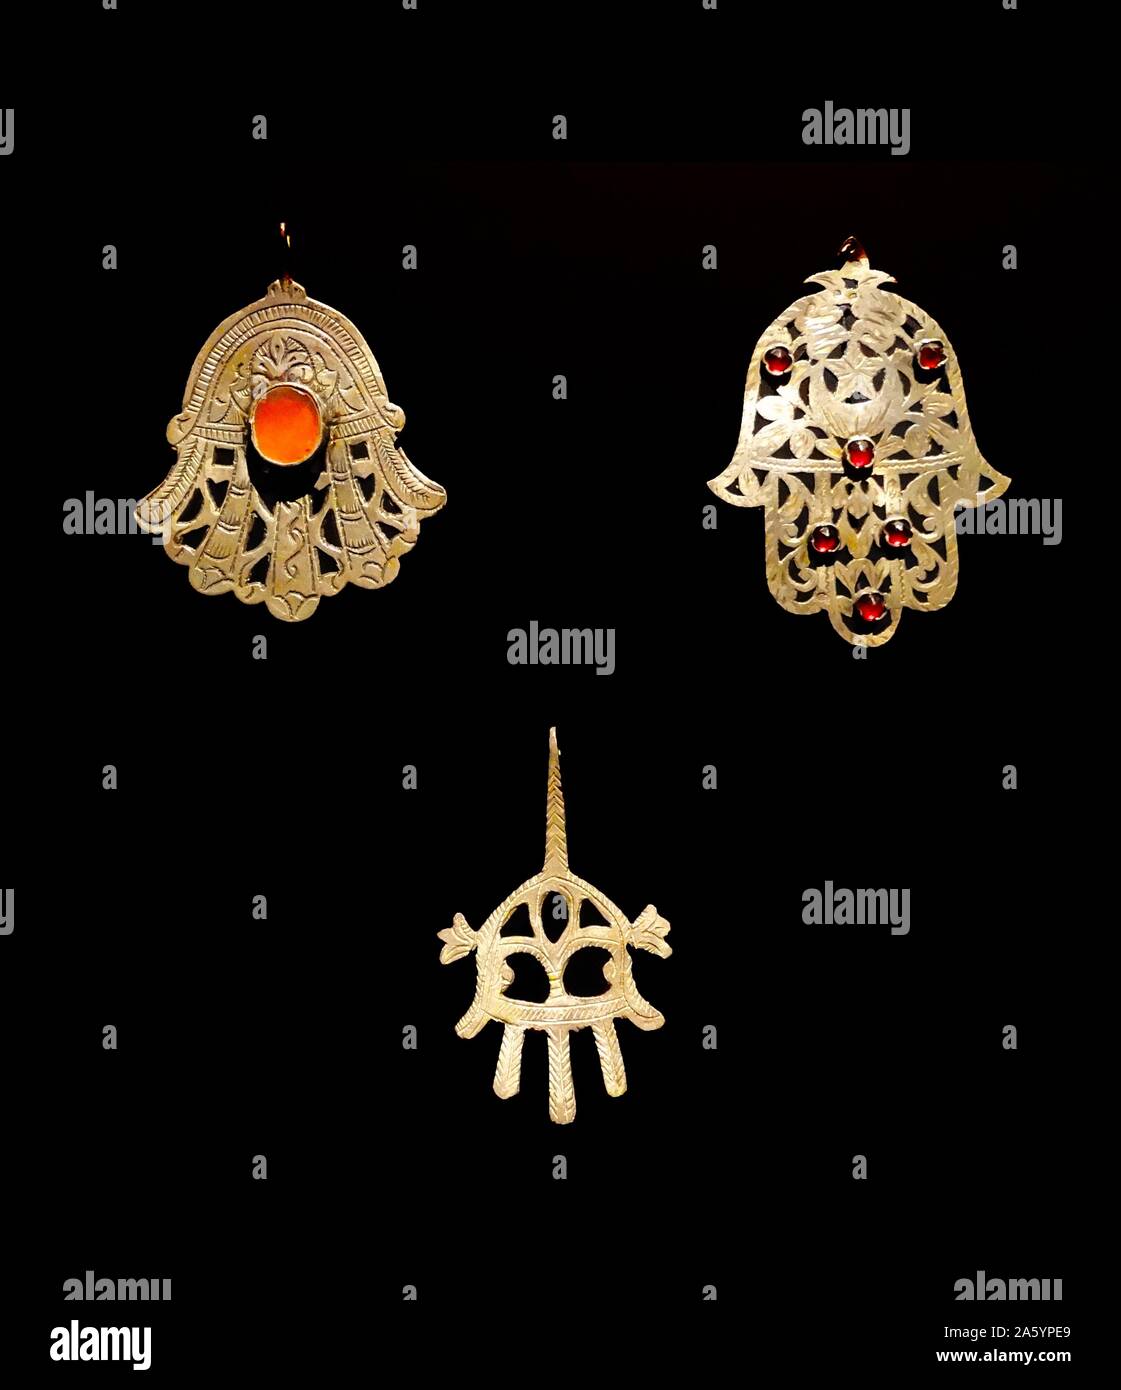 Amulette en forme de palme d'or, connu sous le nom, l'ensemble de la Hamsa au Moyen-Orient et en Afrique. En date du 18e siècle Banque D'Images